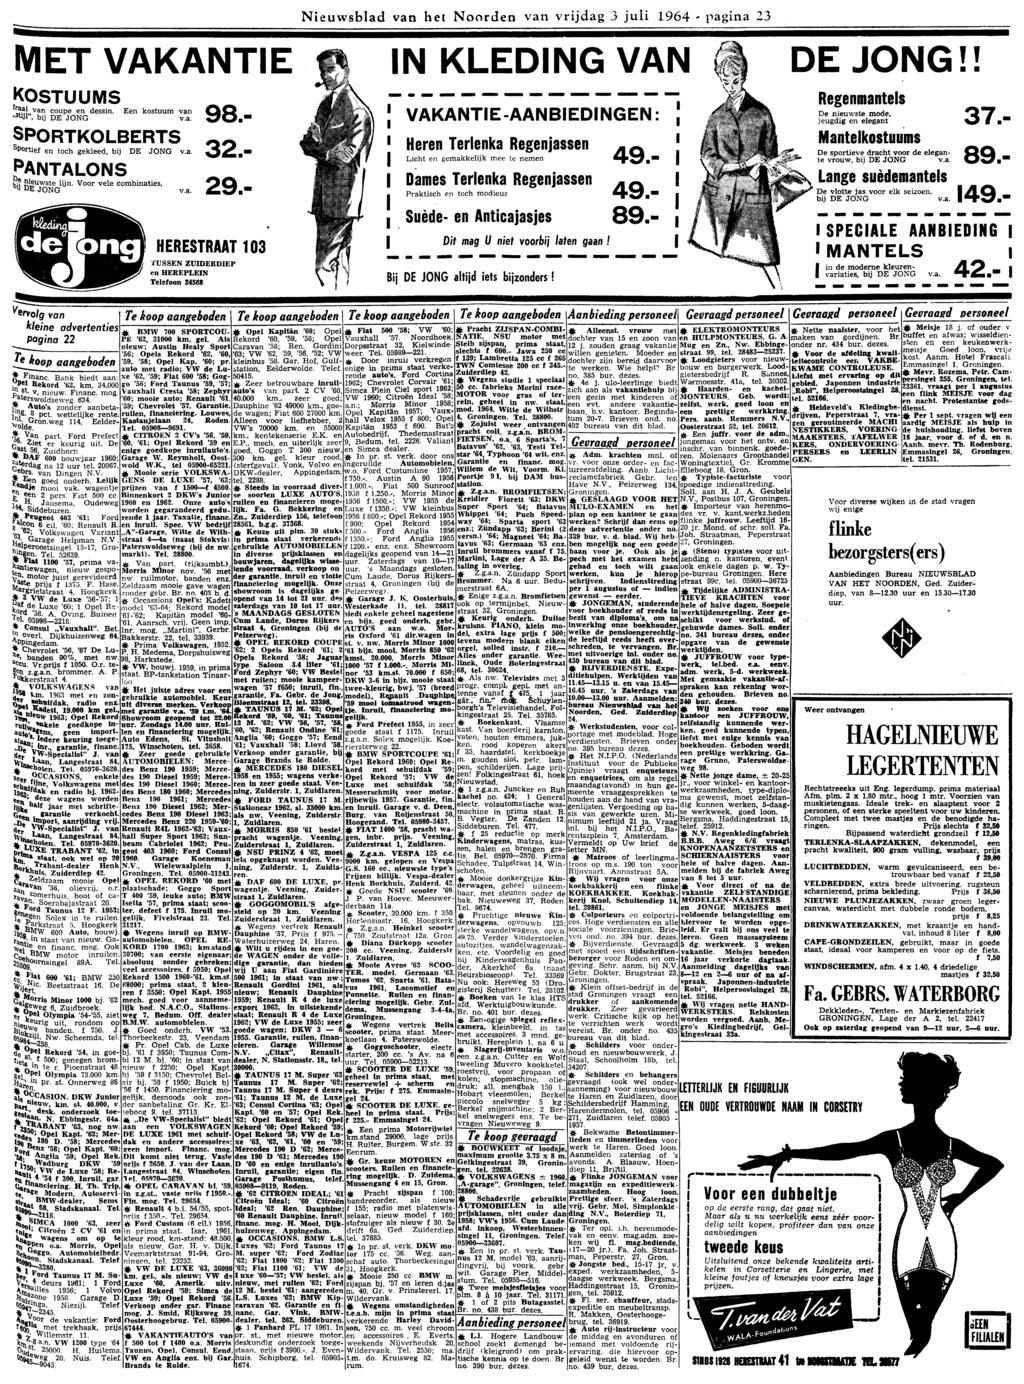 Nieuwsblad van het Noorden van vrijdag 3 juli 1964 23 MET VAKANTE f N KLEDNG VAN fl DE JONG!